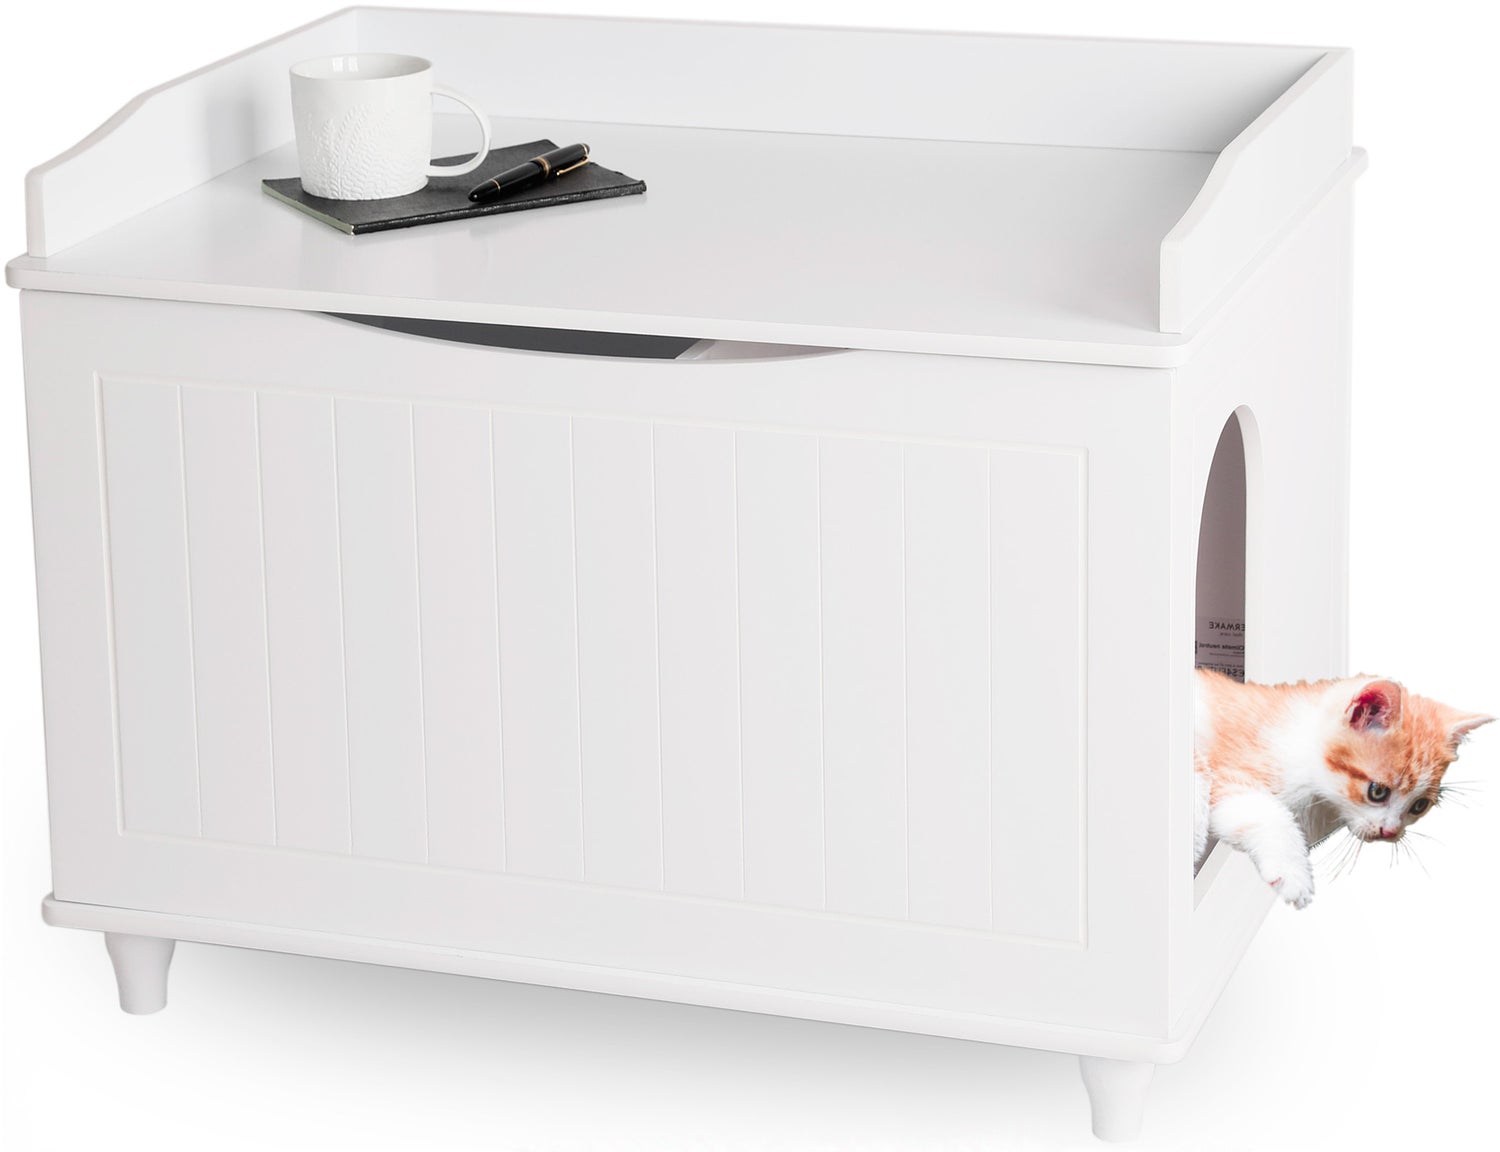 WONDERMAKE - Katzenschrank für Katzentoilette groß aus Holz, Katzenklo-Schrank Kommode XL, Design Katzen-Haus Toilette Klo Waschbecken-Unterschrank für Bad, weiß